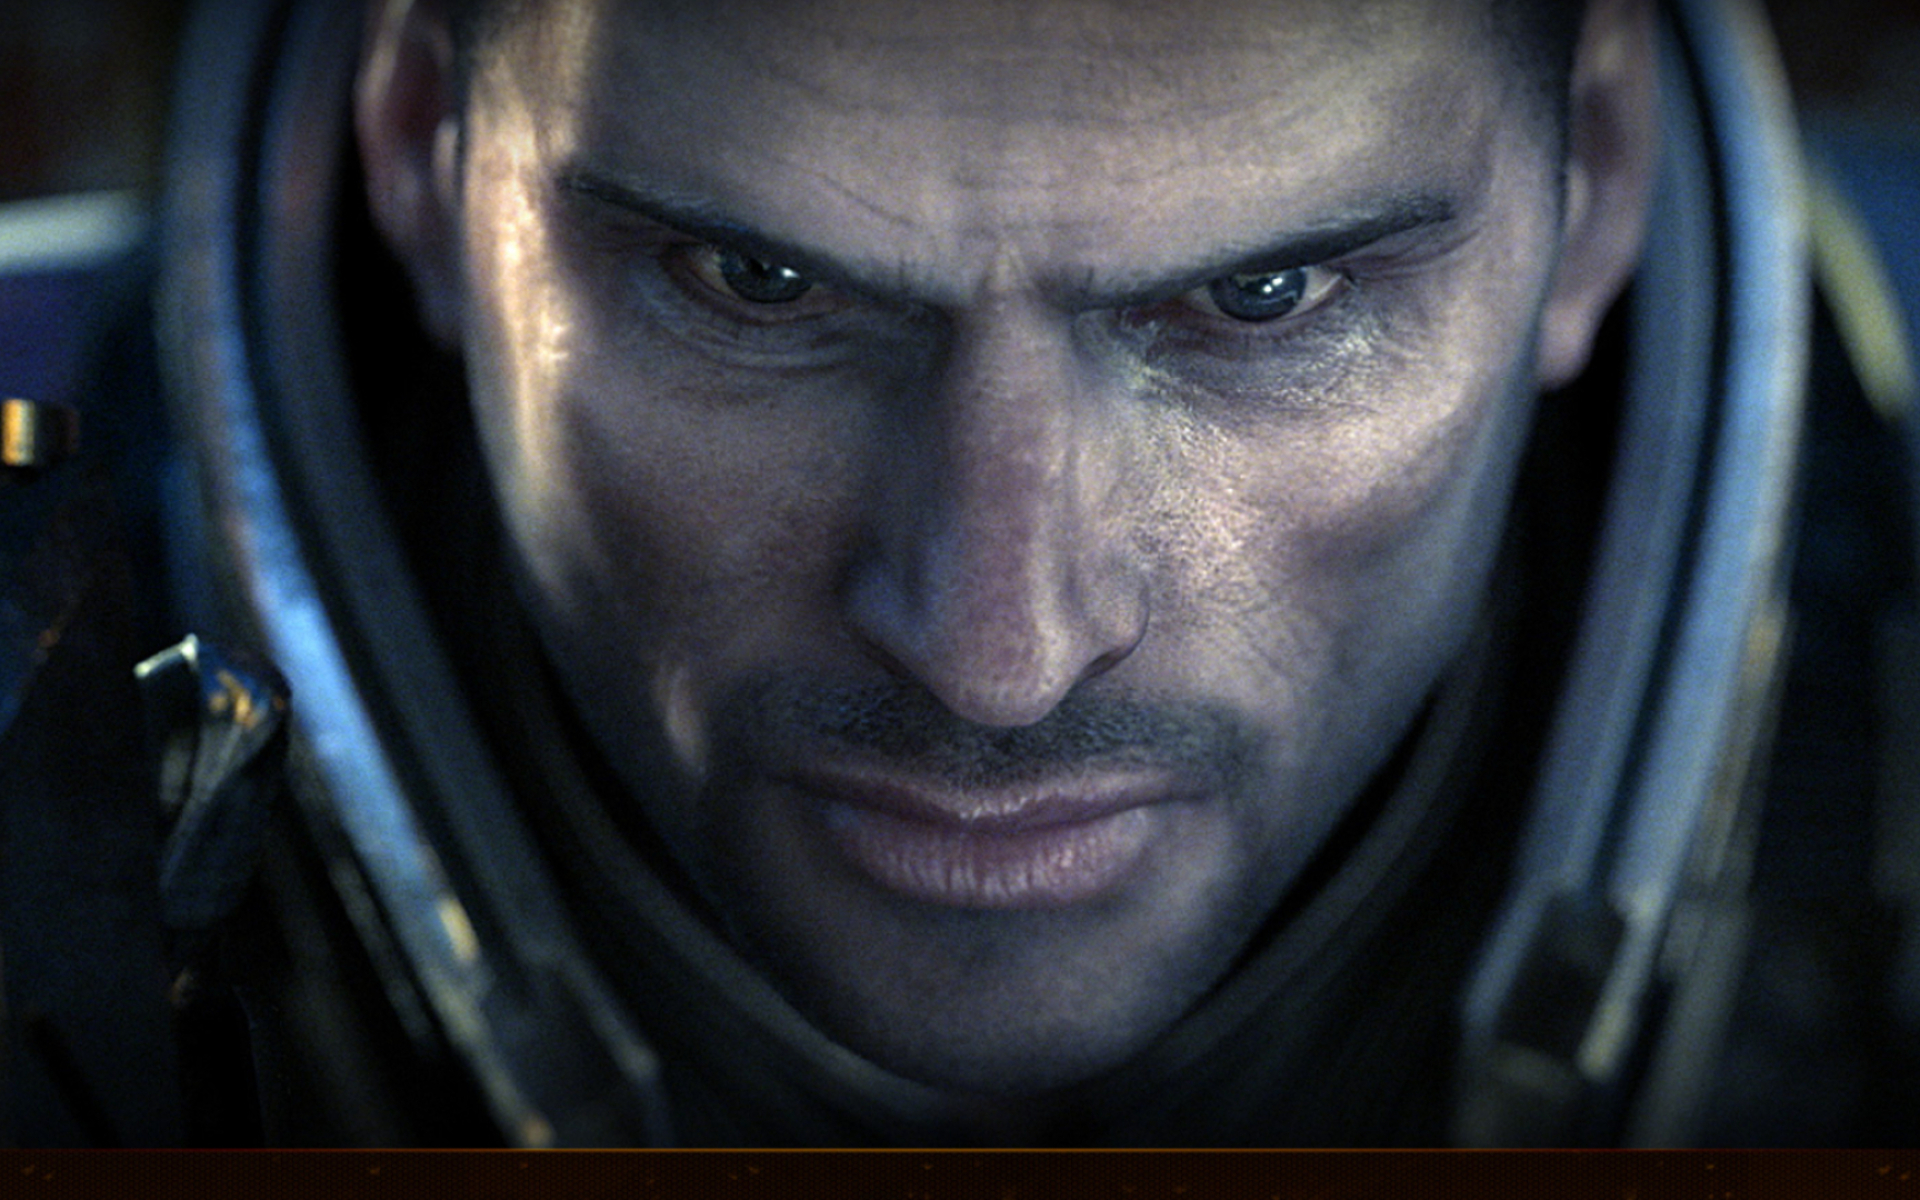 Mass Effect 2: Arrival, Mass Effect 2 wallpaper, Gaming, 1920x1200 HD Desktop